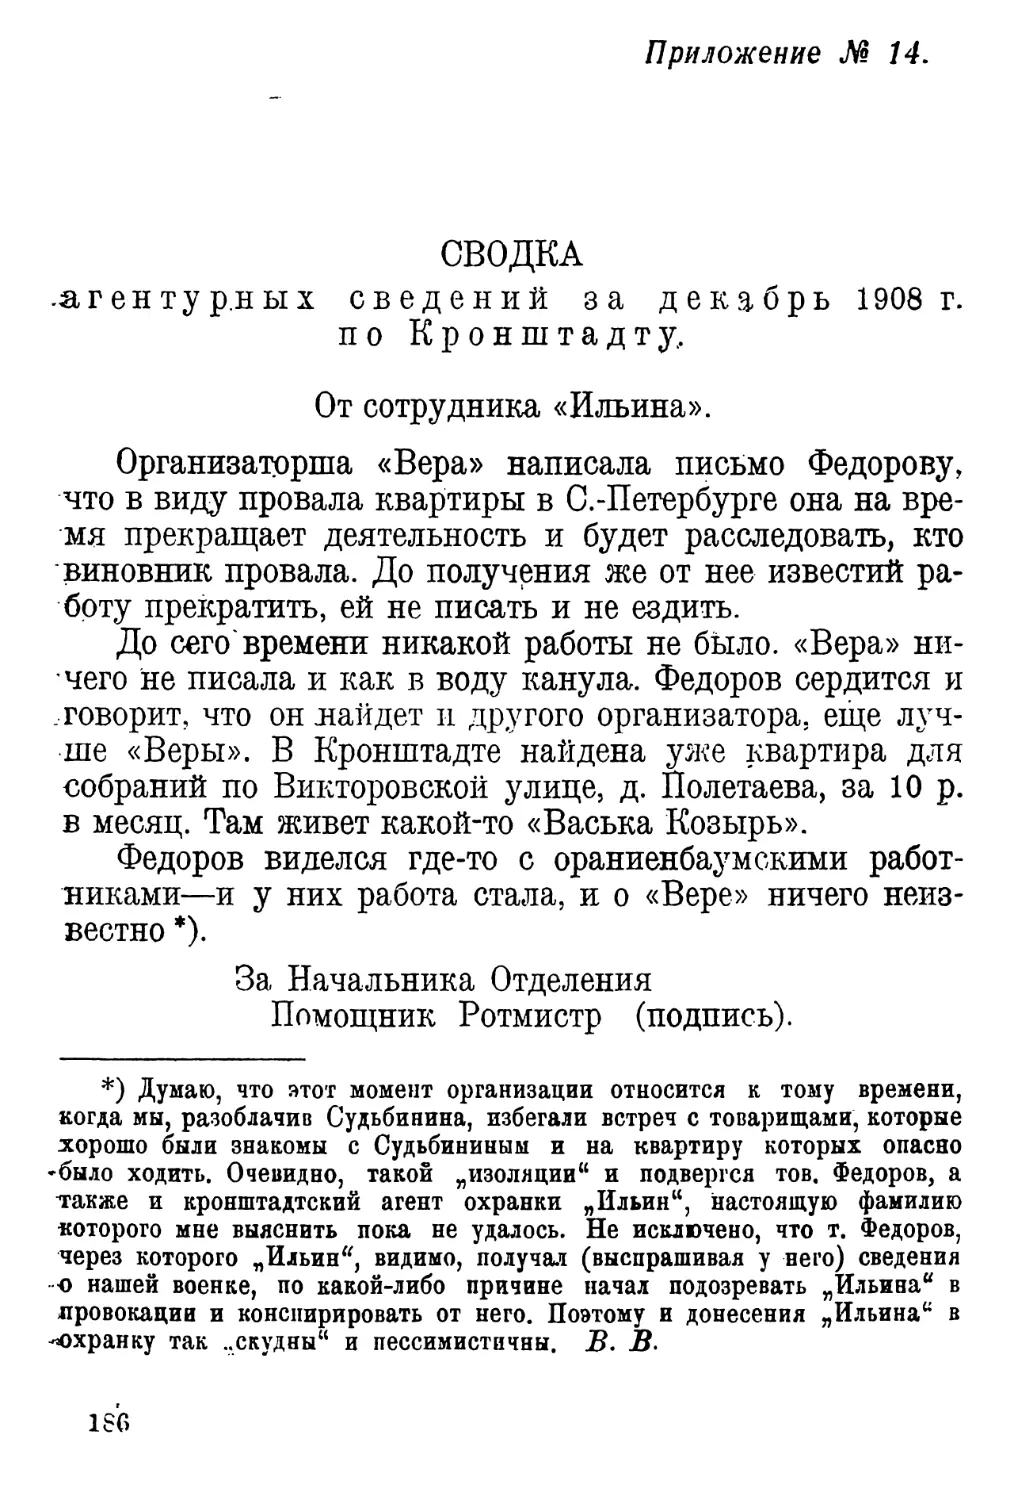 Приложение № 14 СВОДКА агентурных сведений за декабрь 1908 г. по Кронштадту.